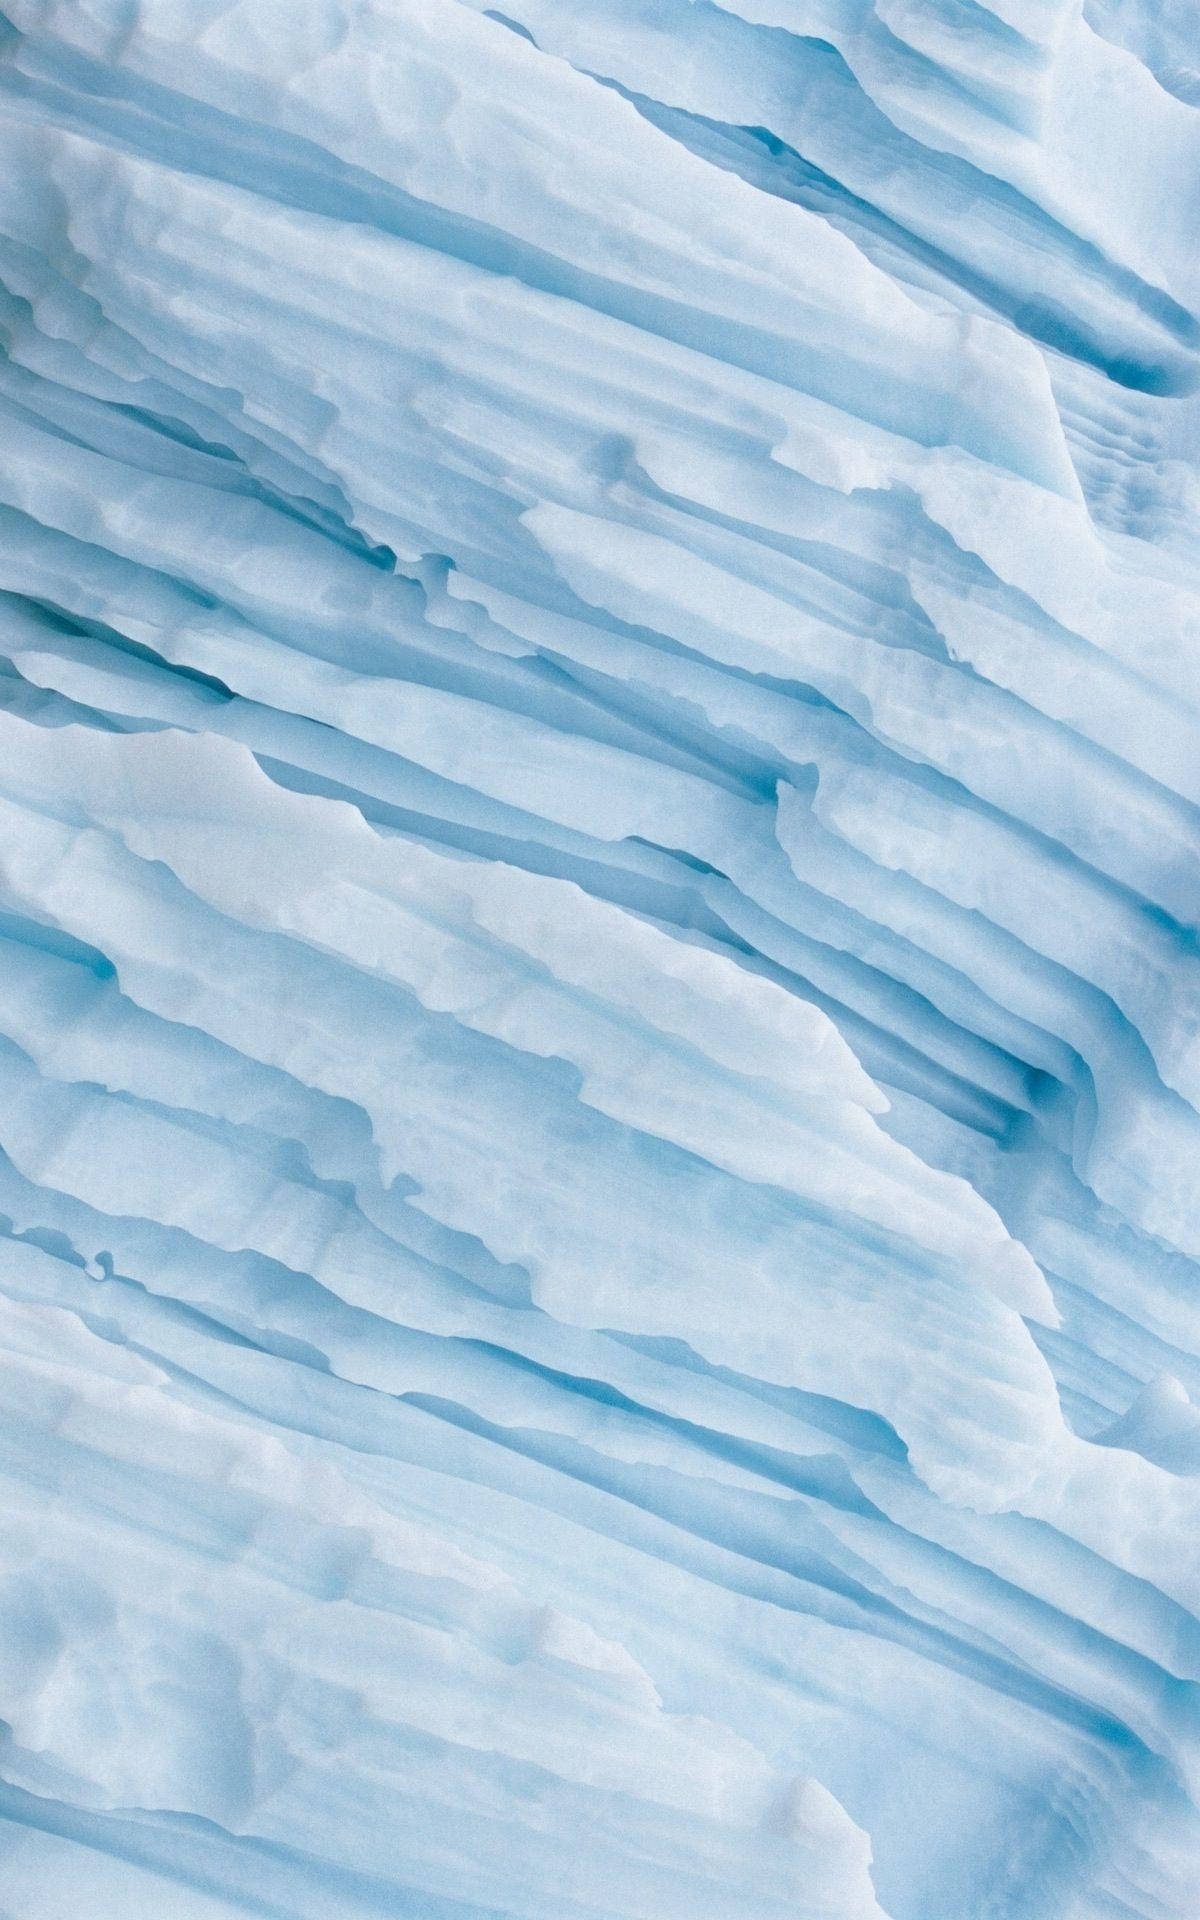 Arktischeshellblaues Ästhetisches Iphone Wallpaper